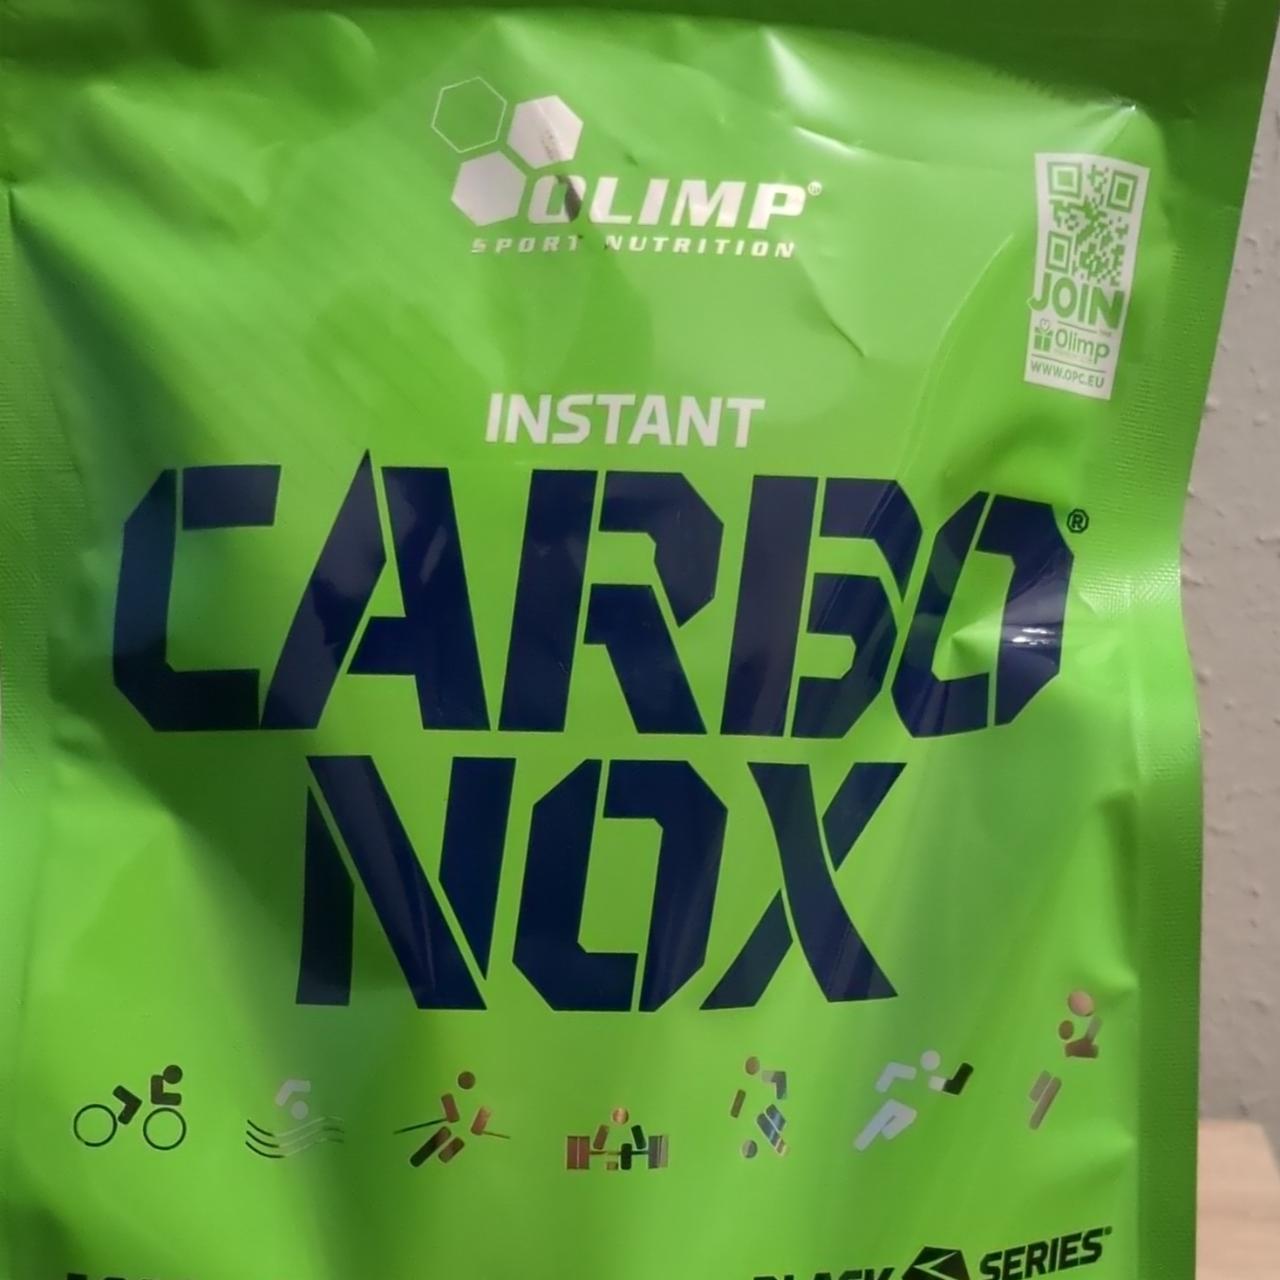 Фото - Instant Carbo Nox Orange Olimp sport nutrition